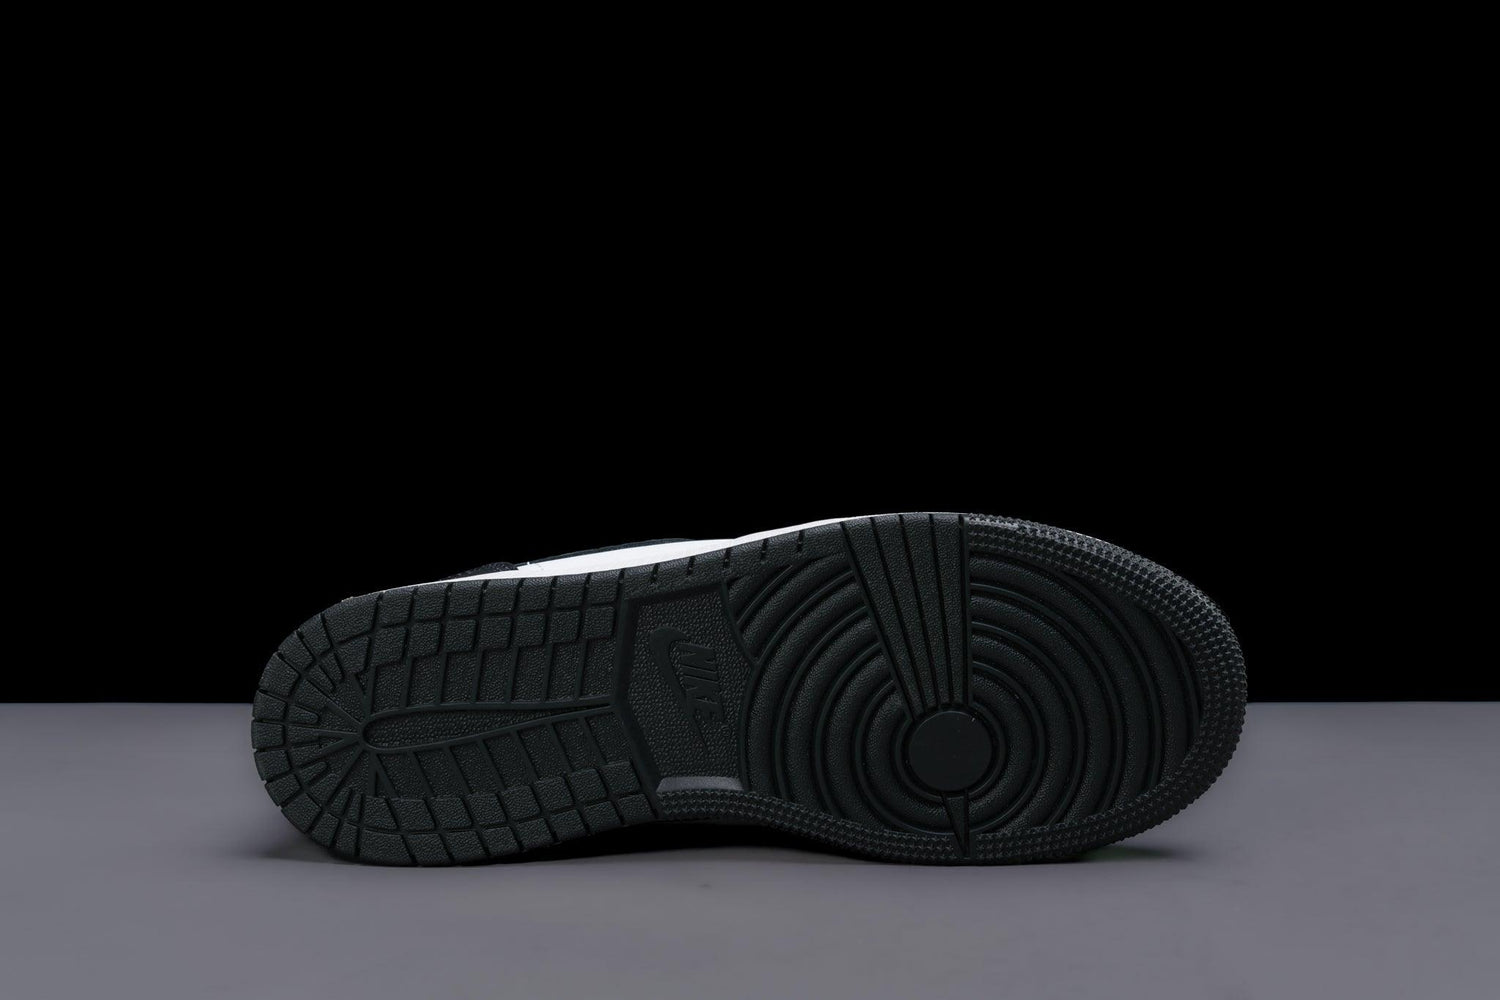 jordan 6 retro maternelle chaussures SE GS 'Panda Elephant' - Urlfreeze Shop